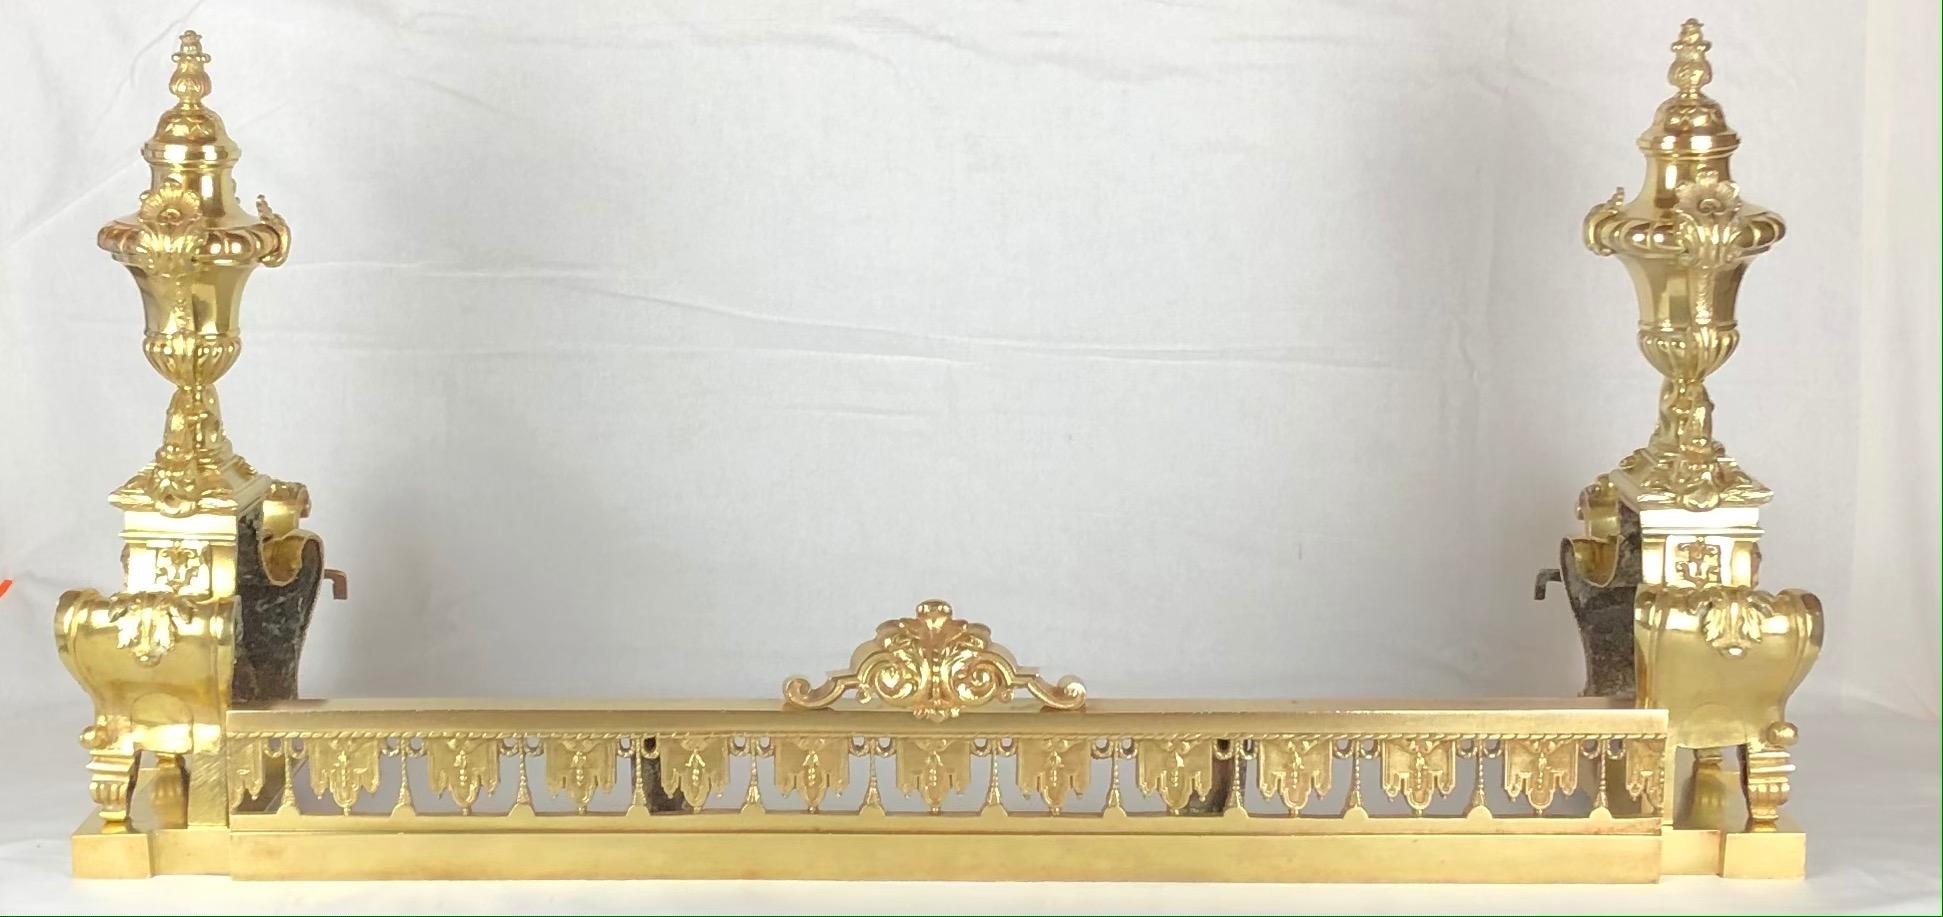 Exquisite Französisch Louis XVI vergoldeter Bronze Andirons oder Chenets mit zentrierten Urne mit Festons (Blumen, Laub und Obst) durch jede Seite mit einer Flamme finial Tops.

Dieses Paar wunderschön gearbeiteter Chenets hat seine ursprüngliche